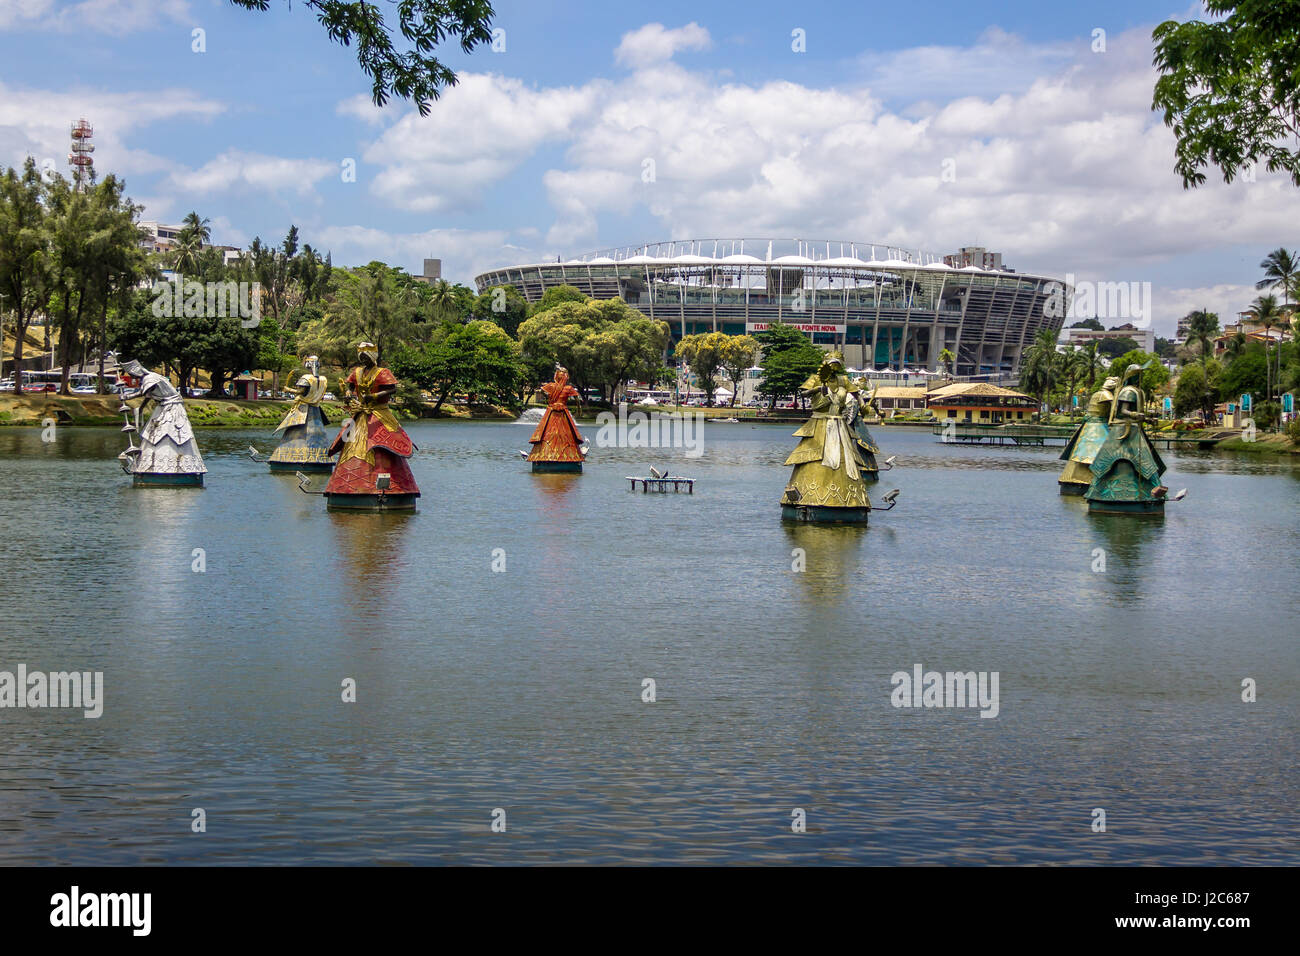 Orixas des statues de saints africains traditionnels candomblé en face de l'Arena Fonte Nova Stadium de Dique do Tororo - Salvador, Bahia, Brésil Banque D'Images